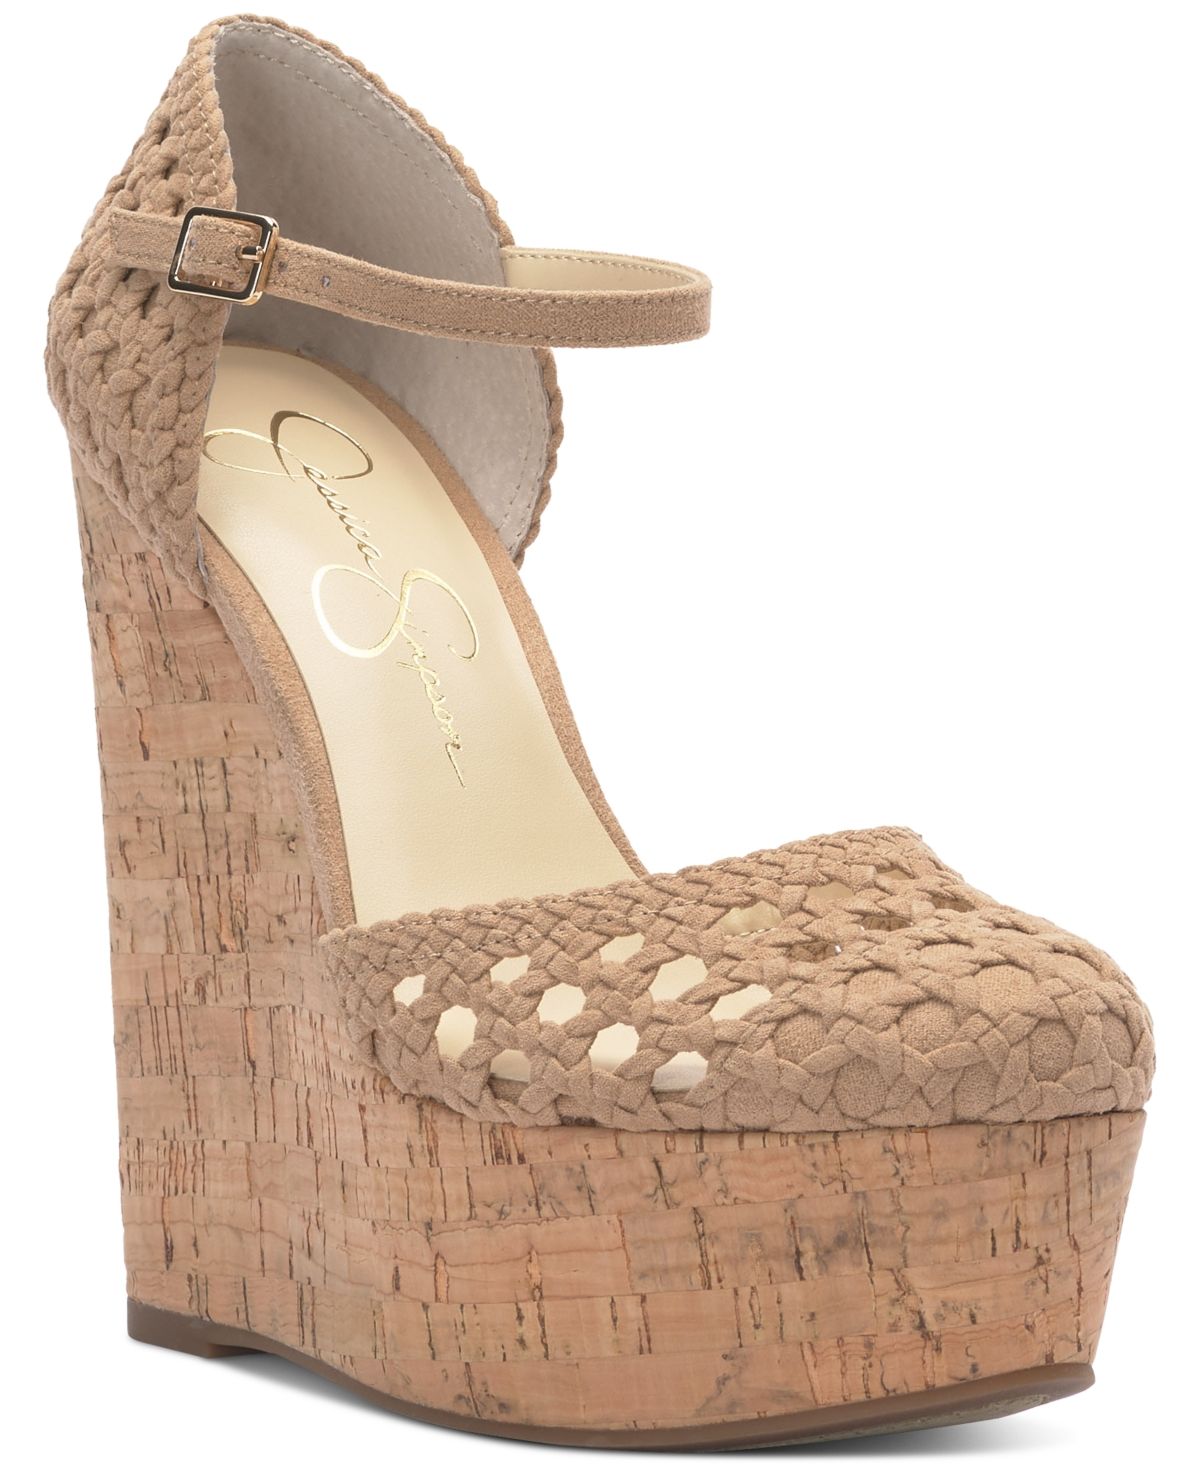 Jessica Simpson Women's Shoe Sz 9 (US Women's) Marshela Ankle-Strap Beige